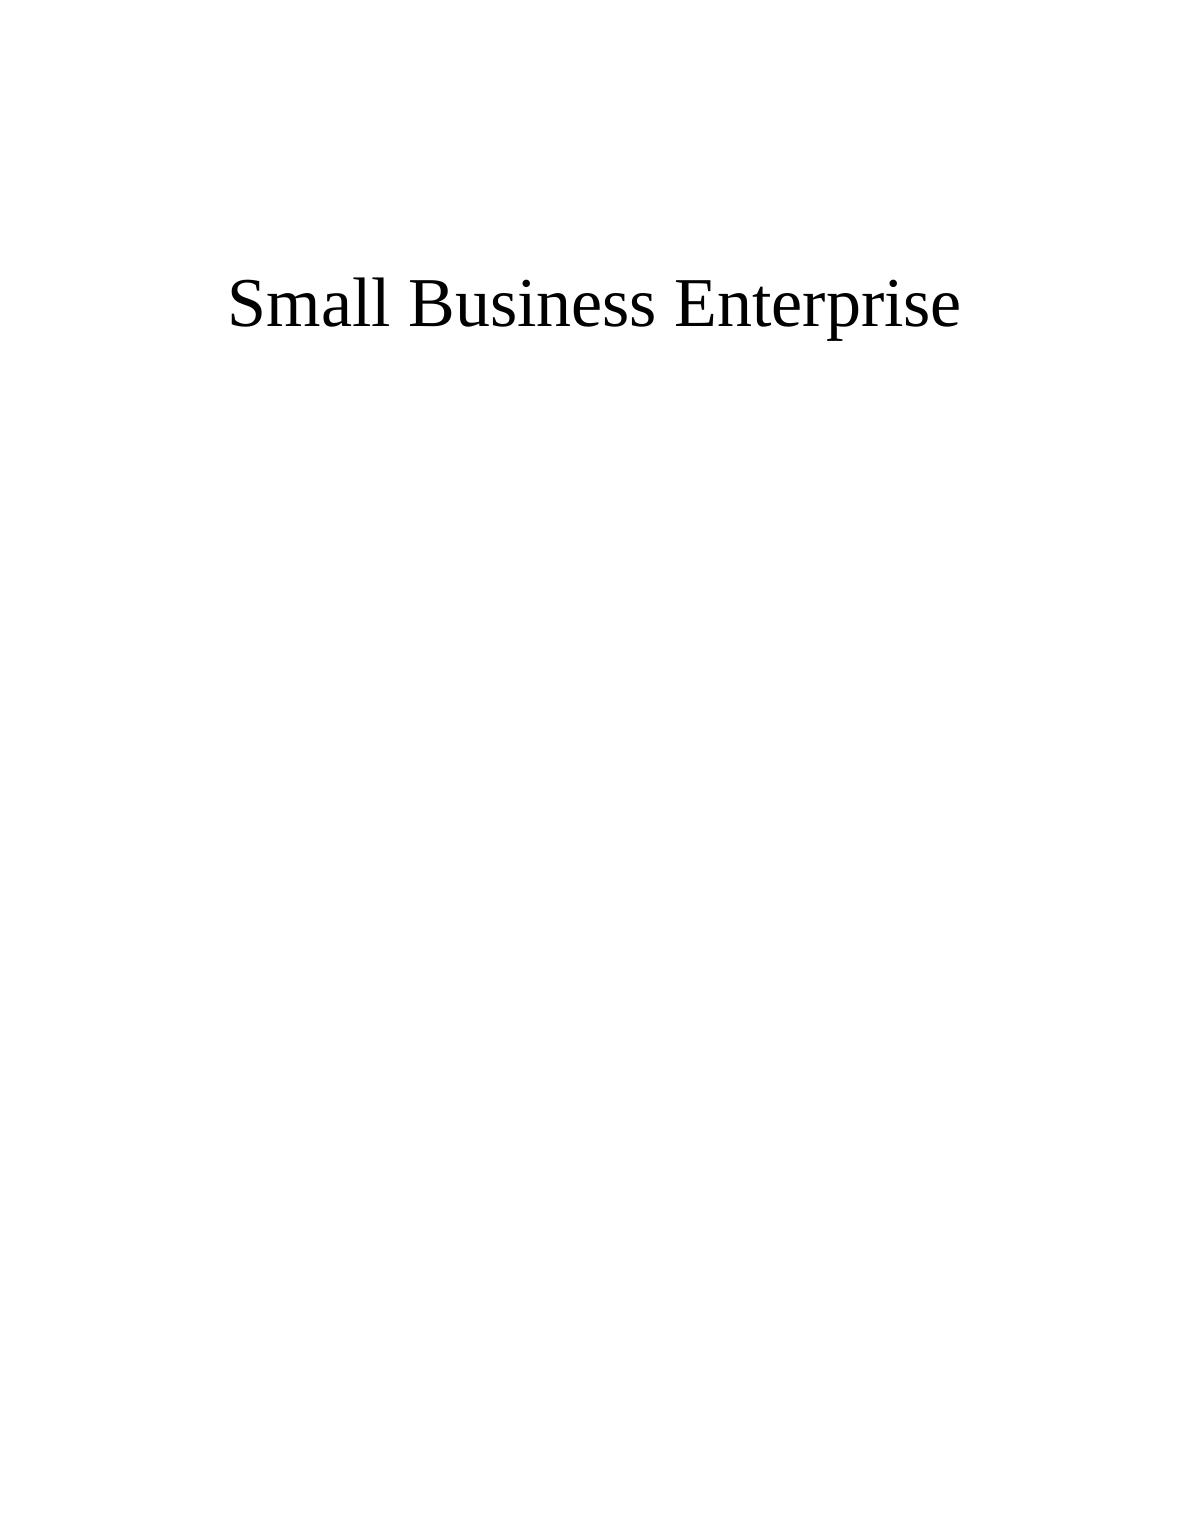 Small Business Enterprise Contents Introduction to Café Portrait_1